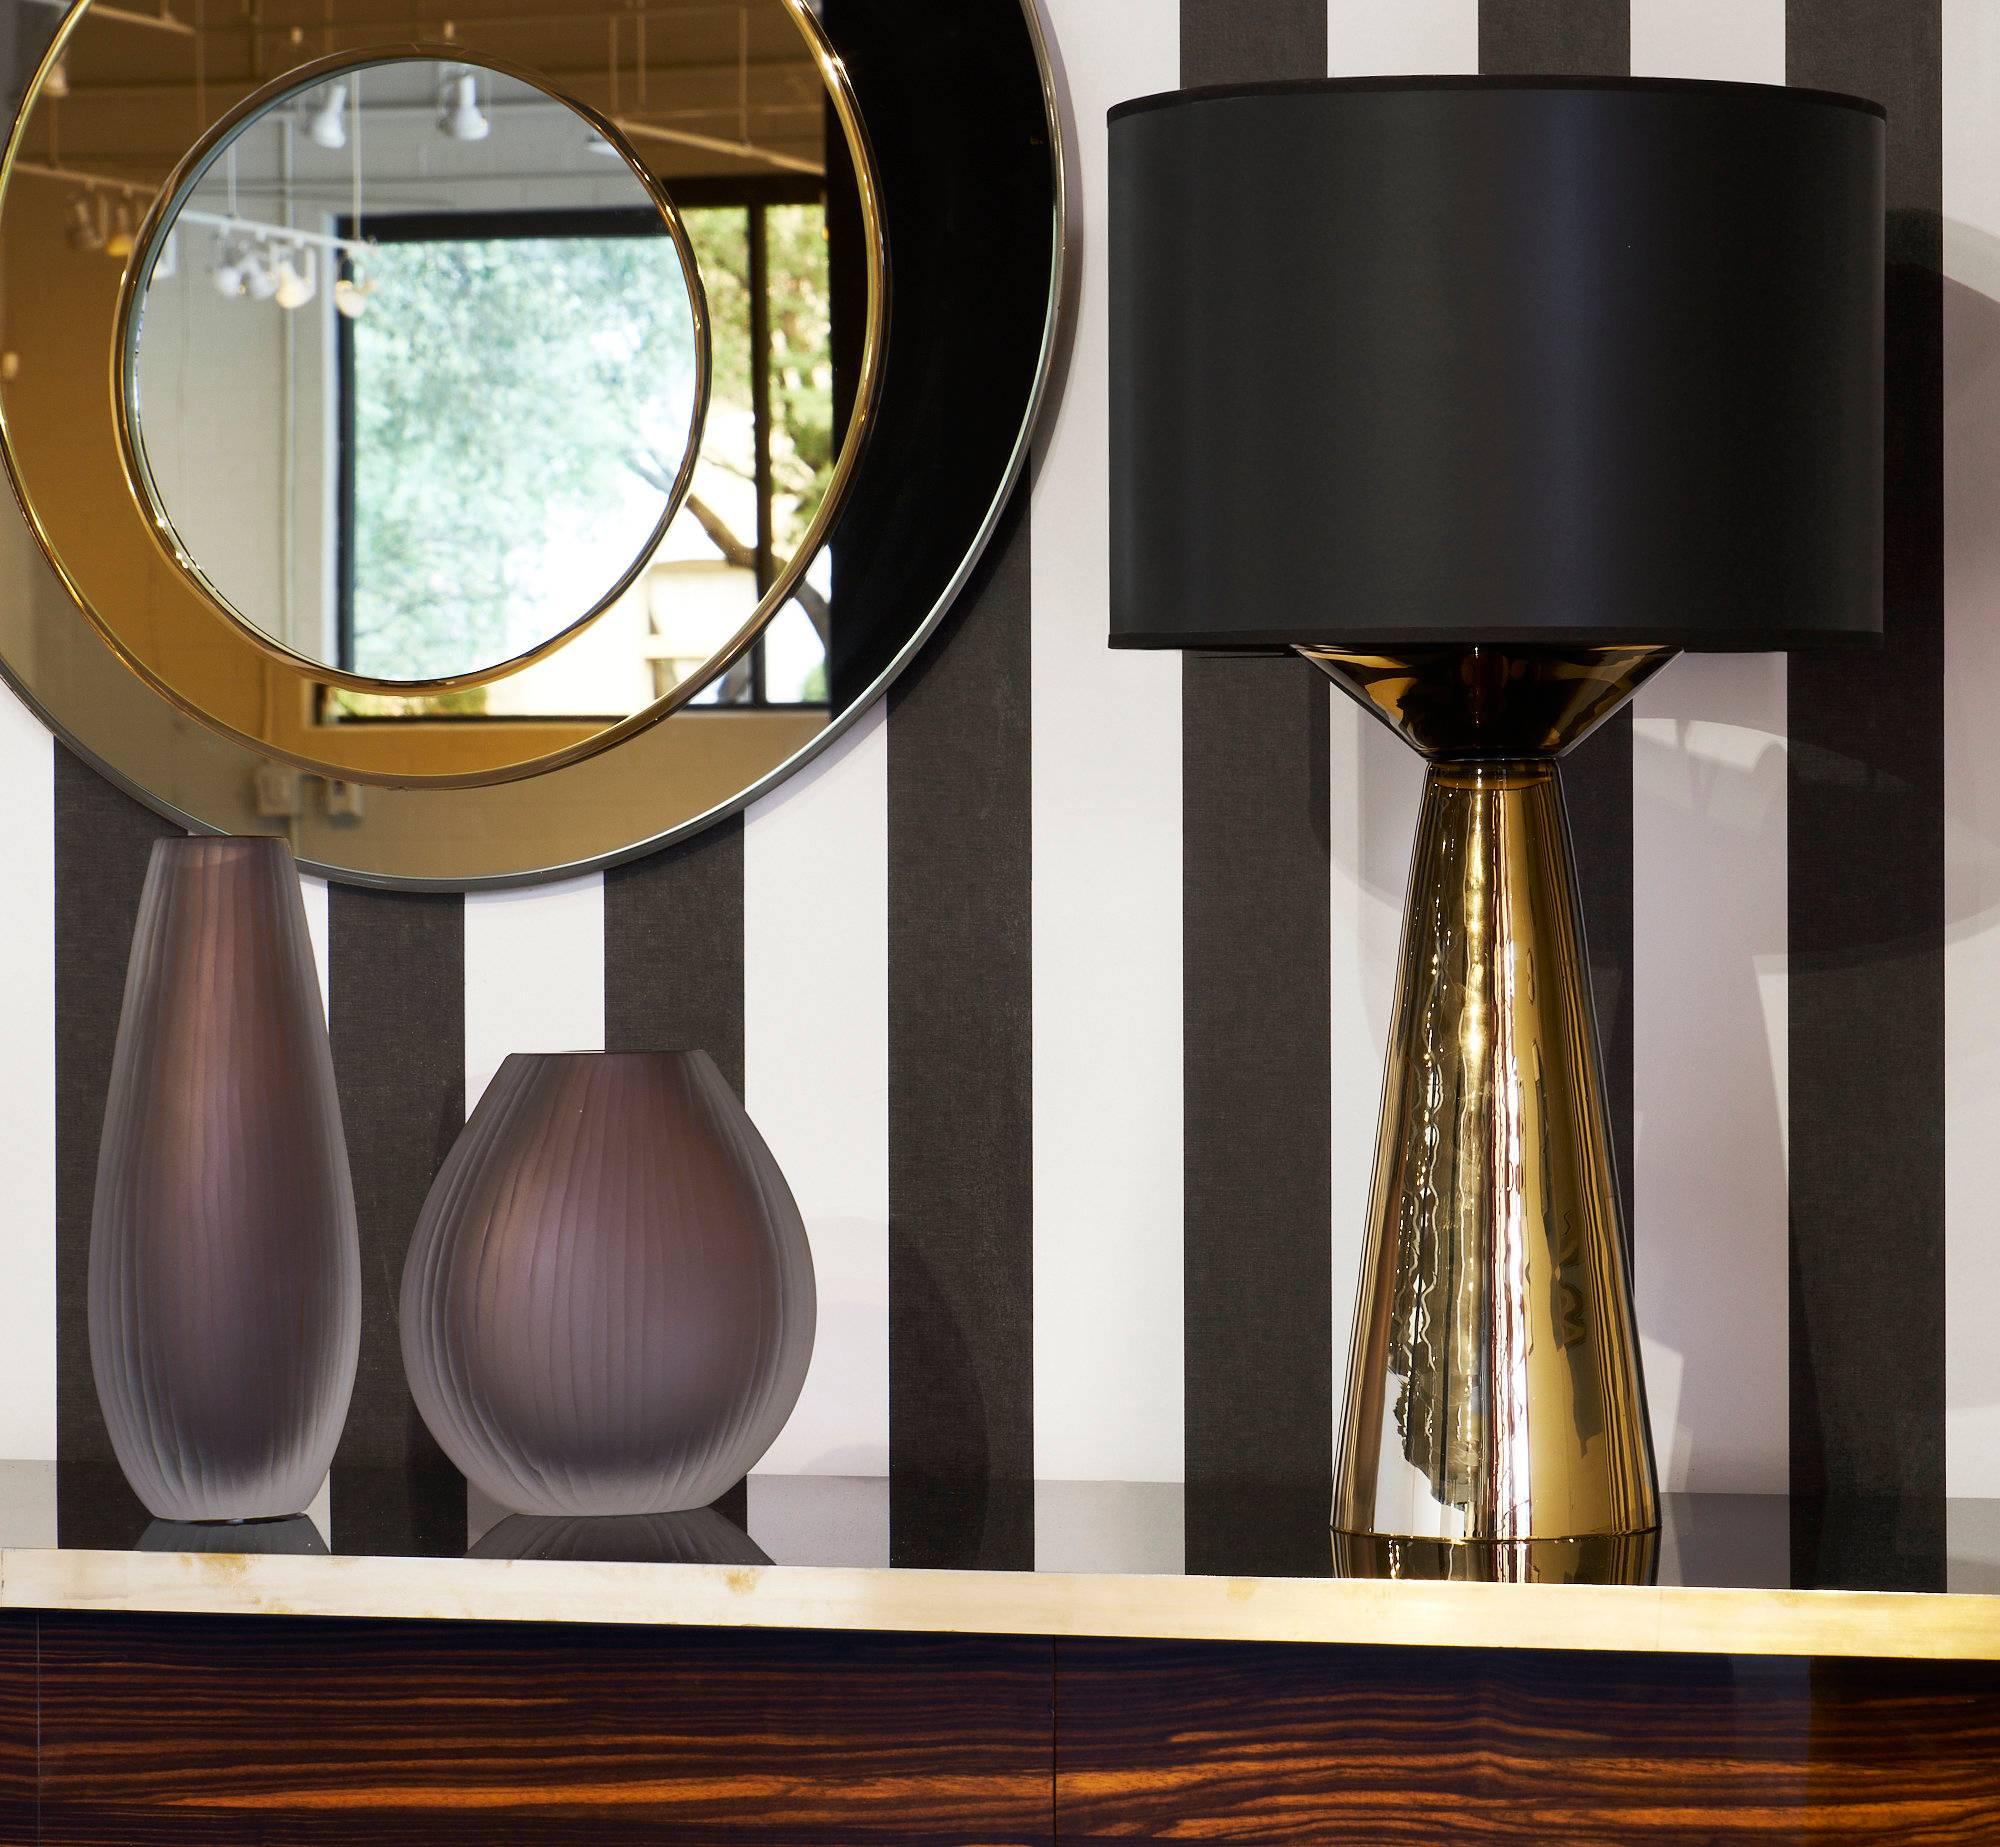 Superbe paire de lampes de table en verre soufflé à la bouche de Murano. La forme géométrique et la couleur métallique rendent ces luminaires uniques si étonnants. Elles sont signées 